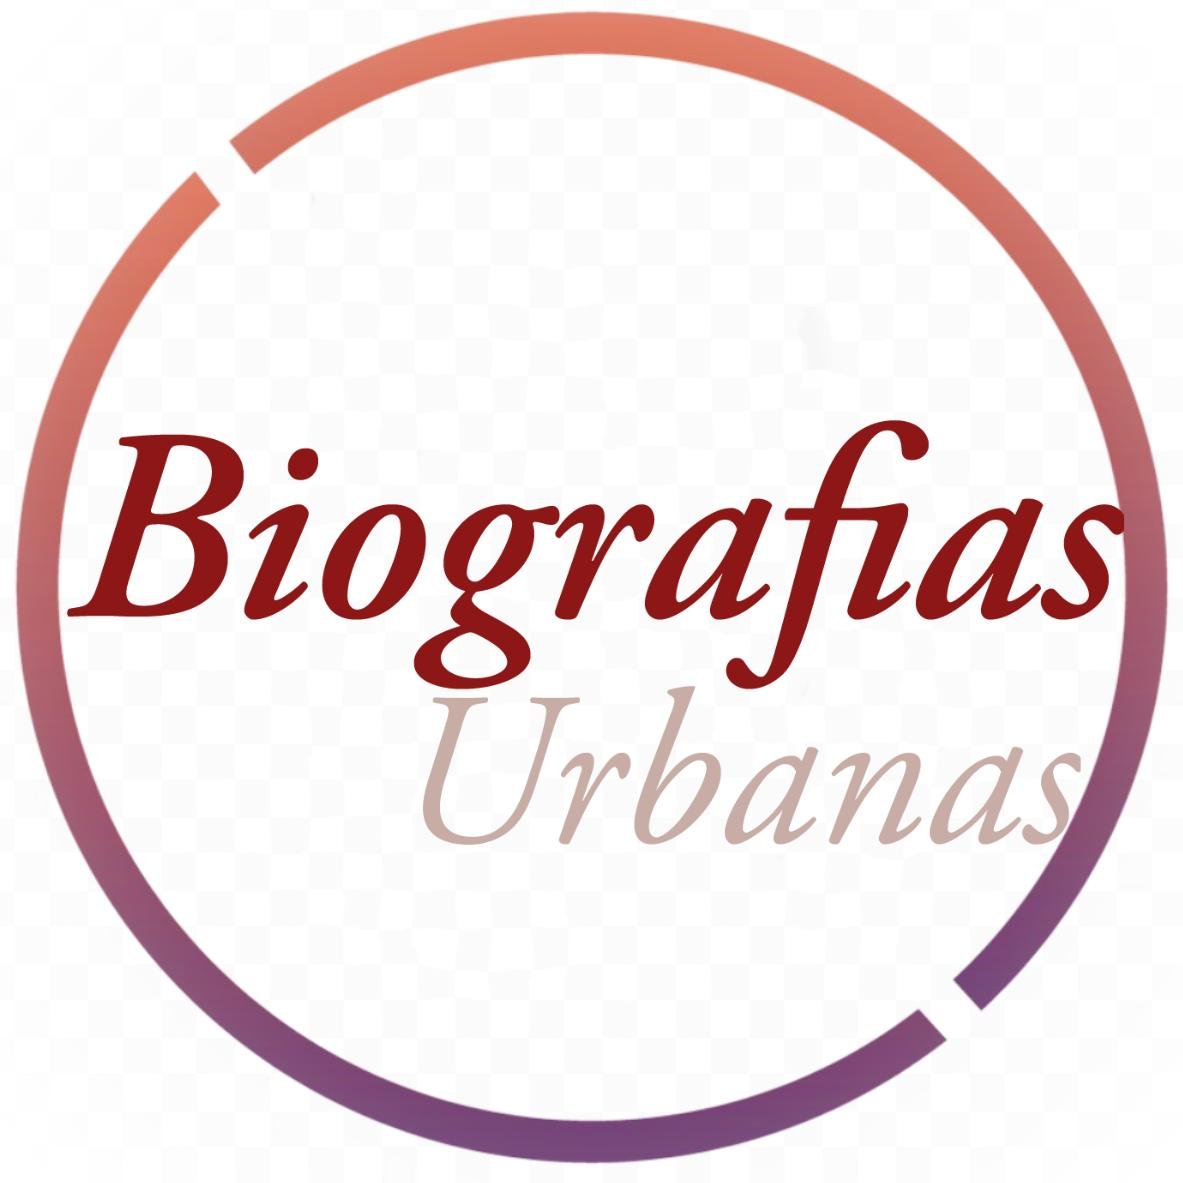 BIOGRAFIAS URBANAS RD
⚫Blog personal🌐
⚫Dominicano🇩🇴
⚫No hay promoción gratis💯
⚫Editores
⚫suscribir
⚫Movimiento Urbano 👻sɴᴀᴘᴄʜᴀᴛ: @ RDBiografi